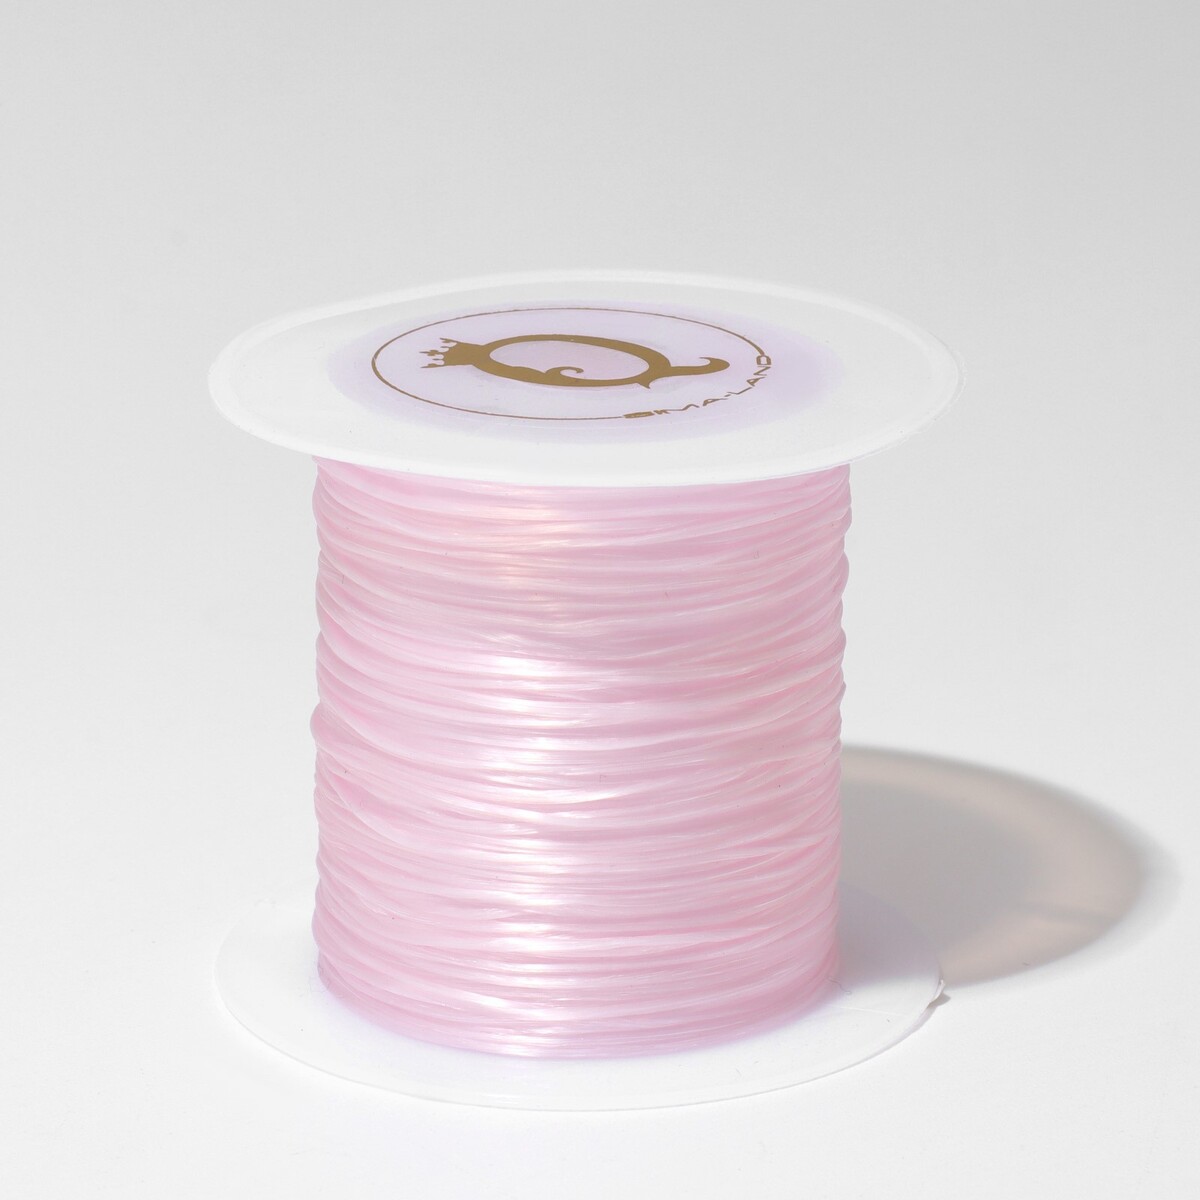 Нить силиконовая (резинка) d=0,5 мм, l=10 м (прочность 2250 денье), цвет светло-розовый